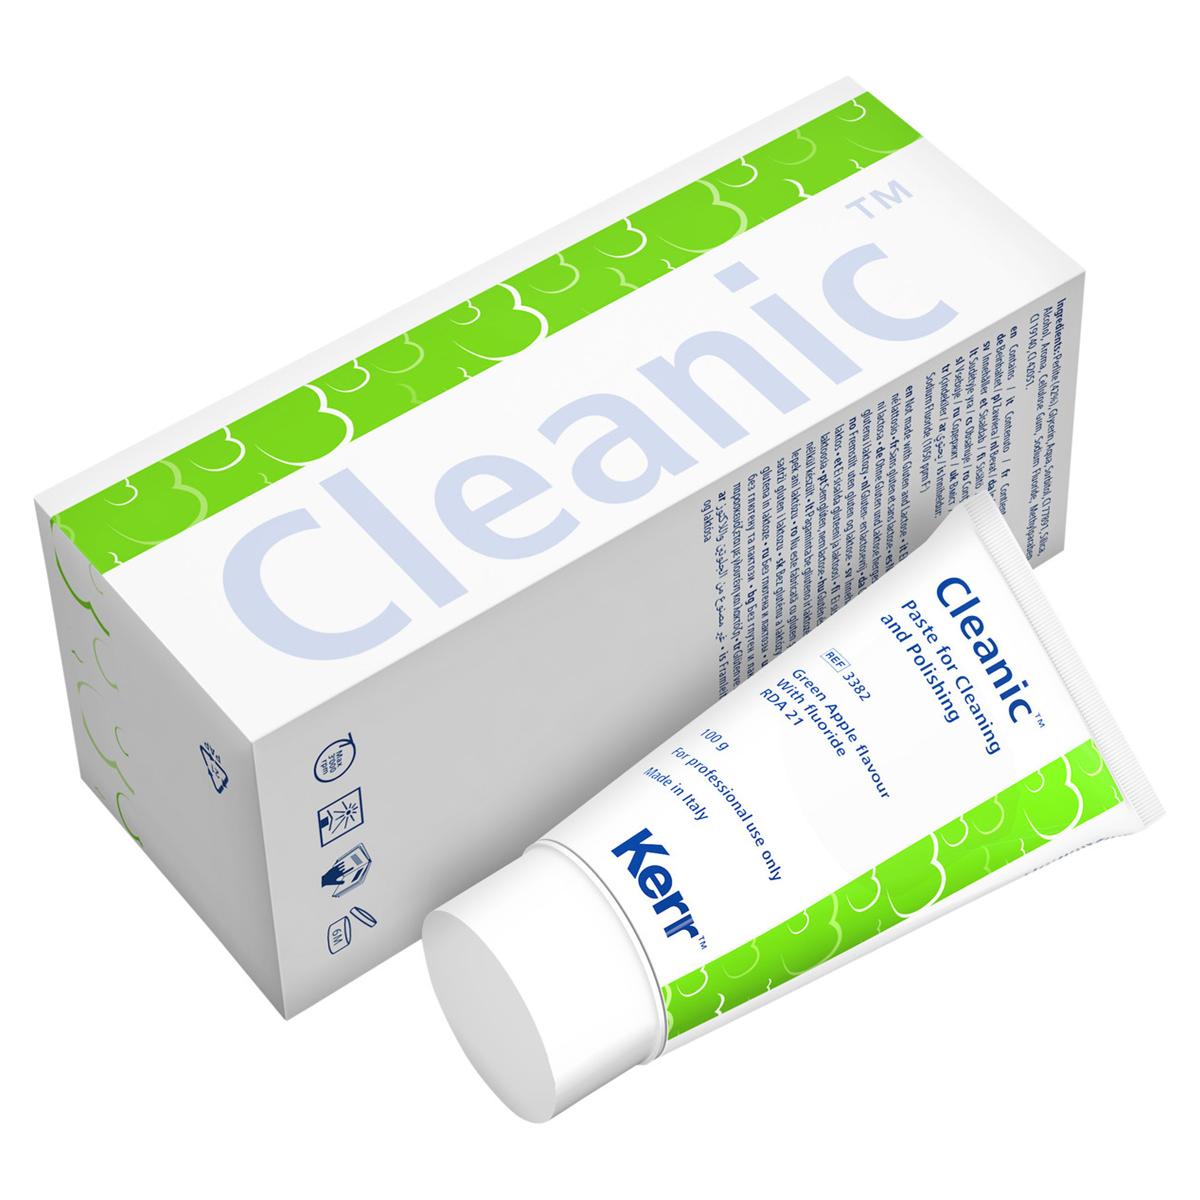 Cleanic met fluoride - Green Apple, Tube 100 gram (REF. 3382)